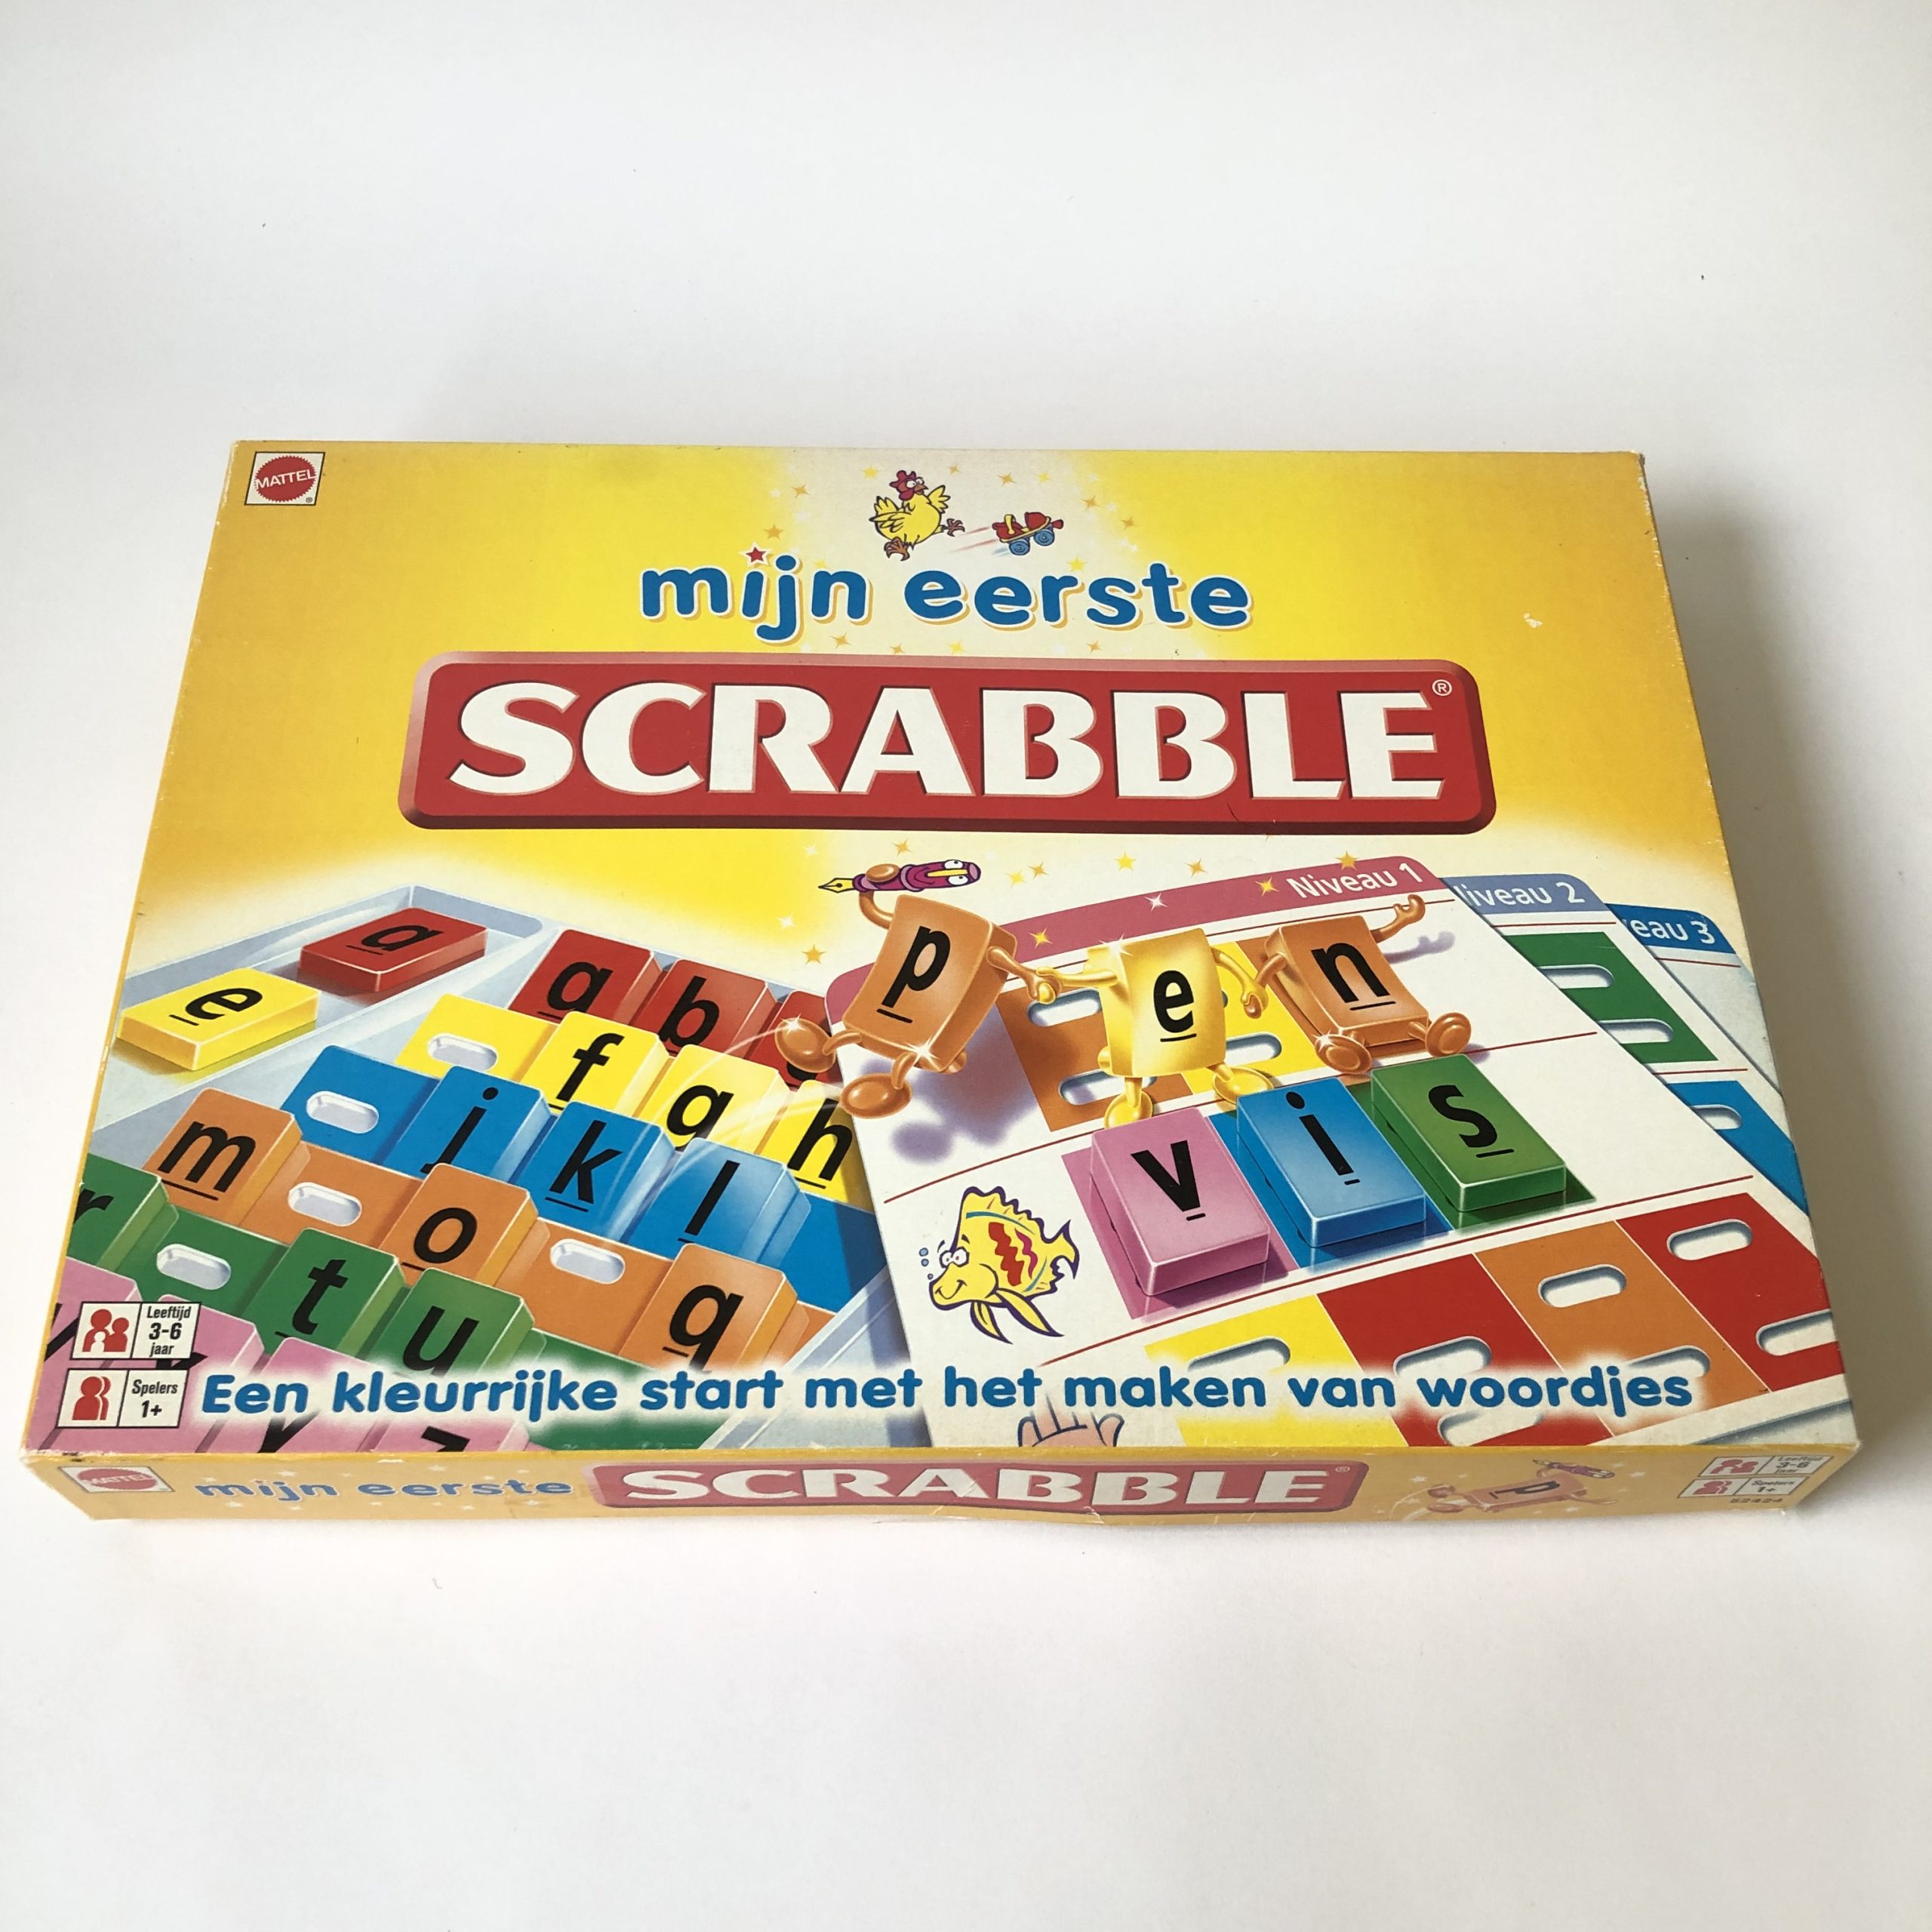 Mijn eerste Scrabble van Mattel uit jaar 2000 (1)